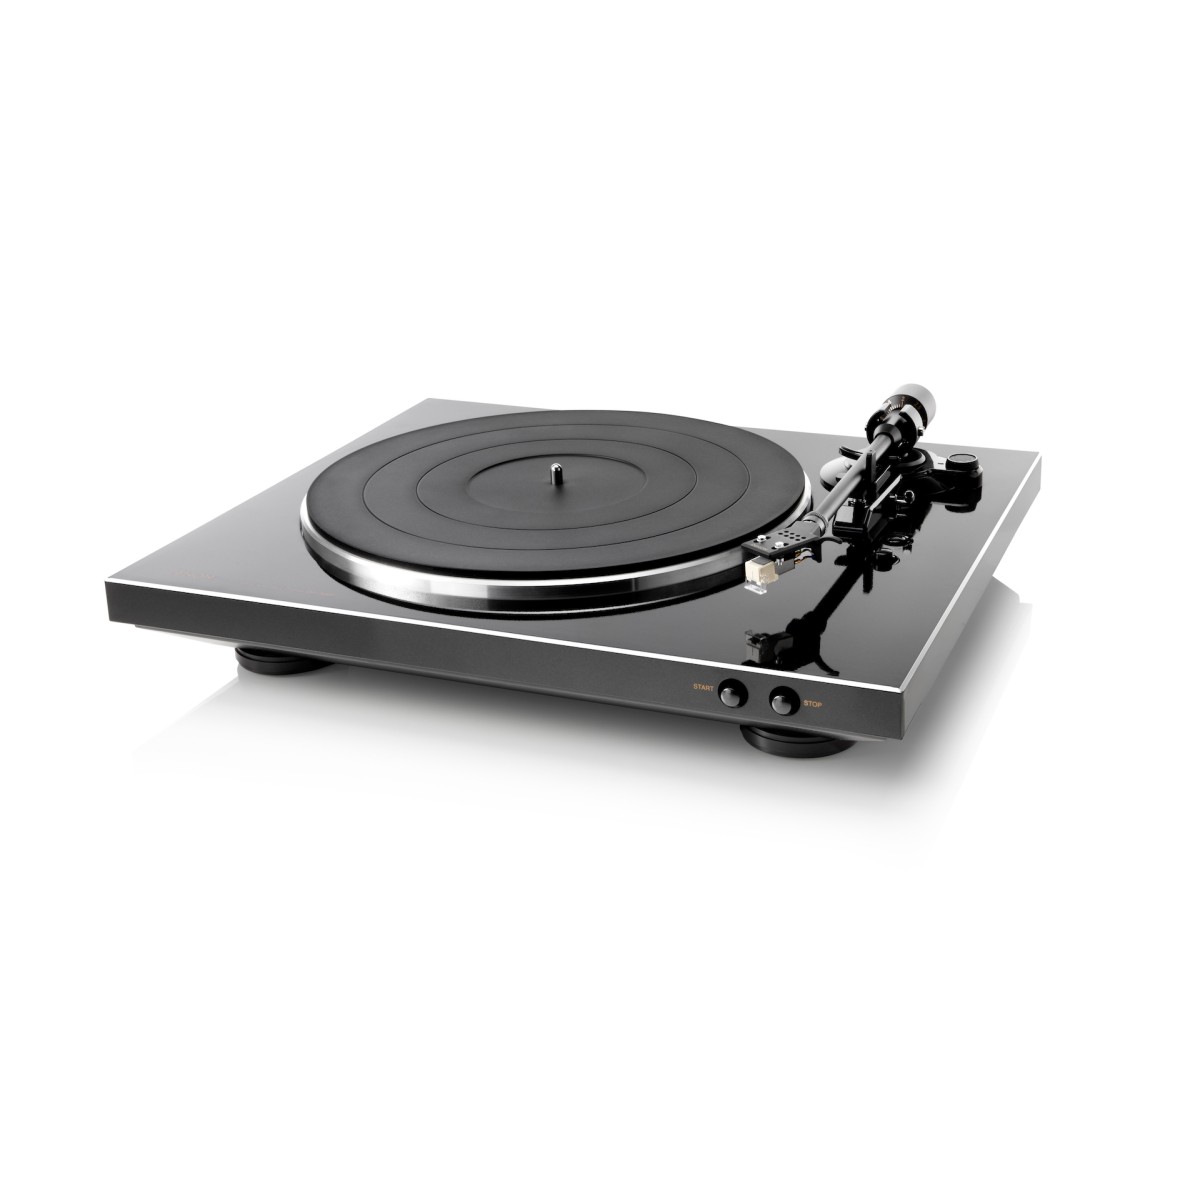 Hier sehen Sie den Artikel DP-300F Turntable black aus der Kategorie Platines vinyle. Dieser Artikel ist erhältlich bei cebrands.ch